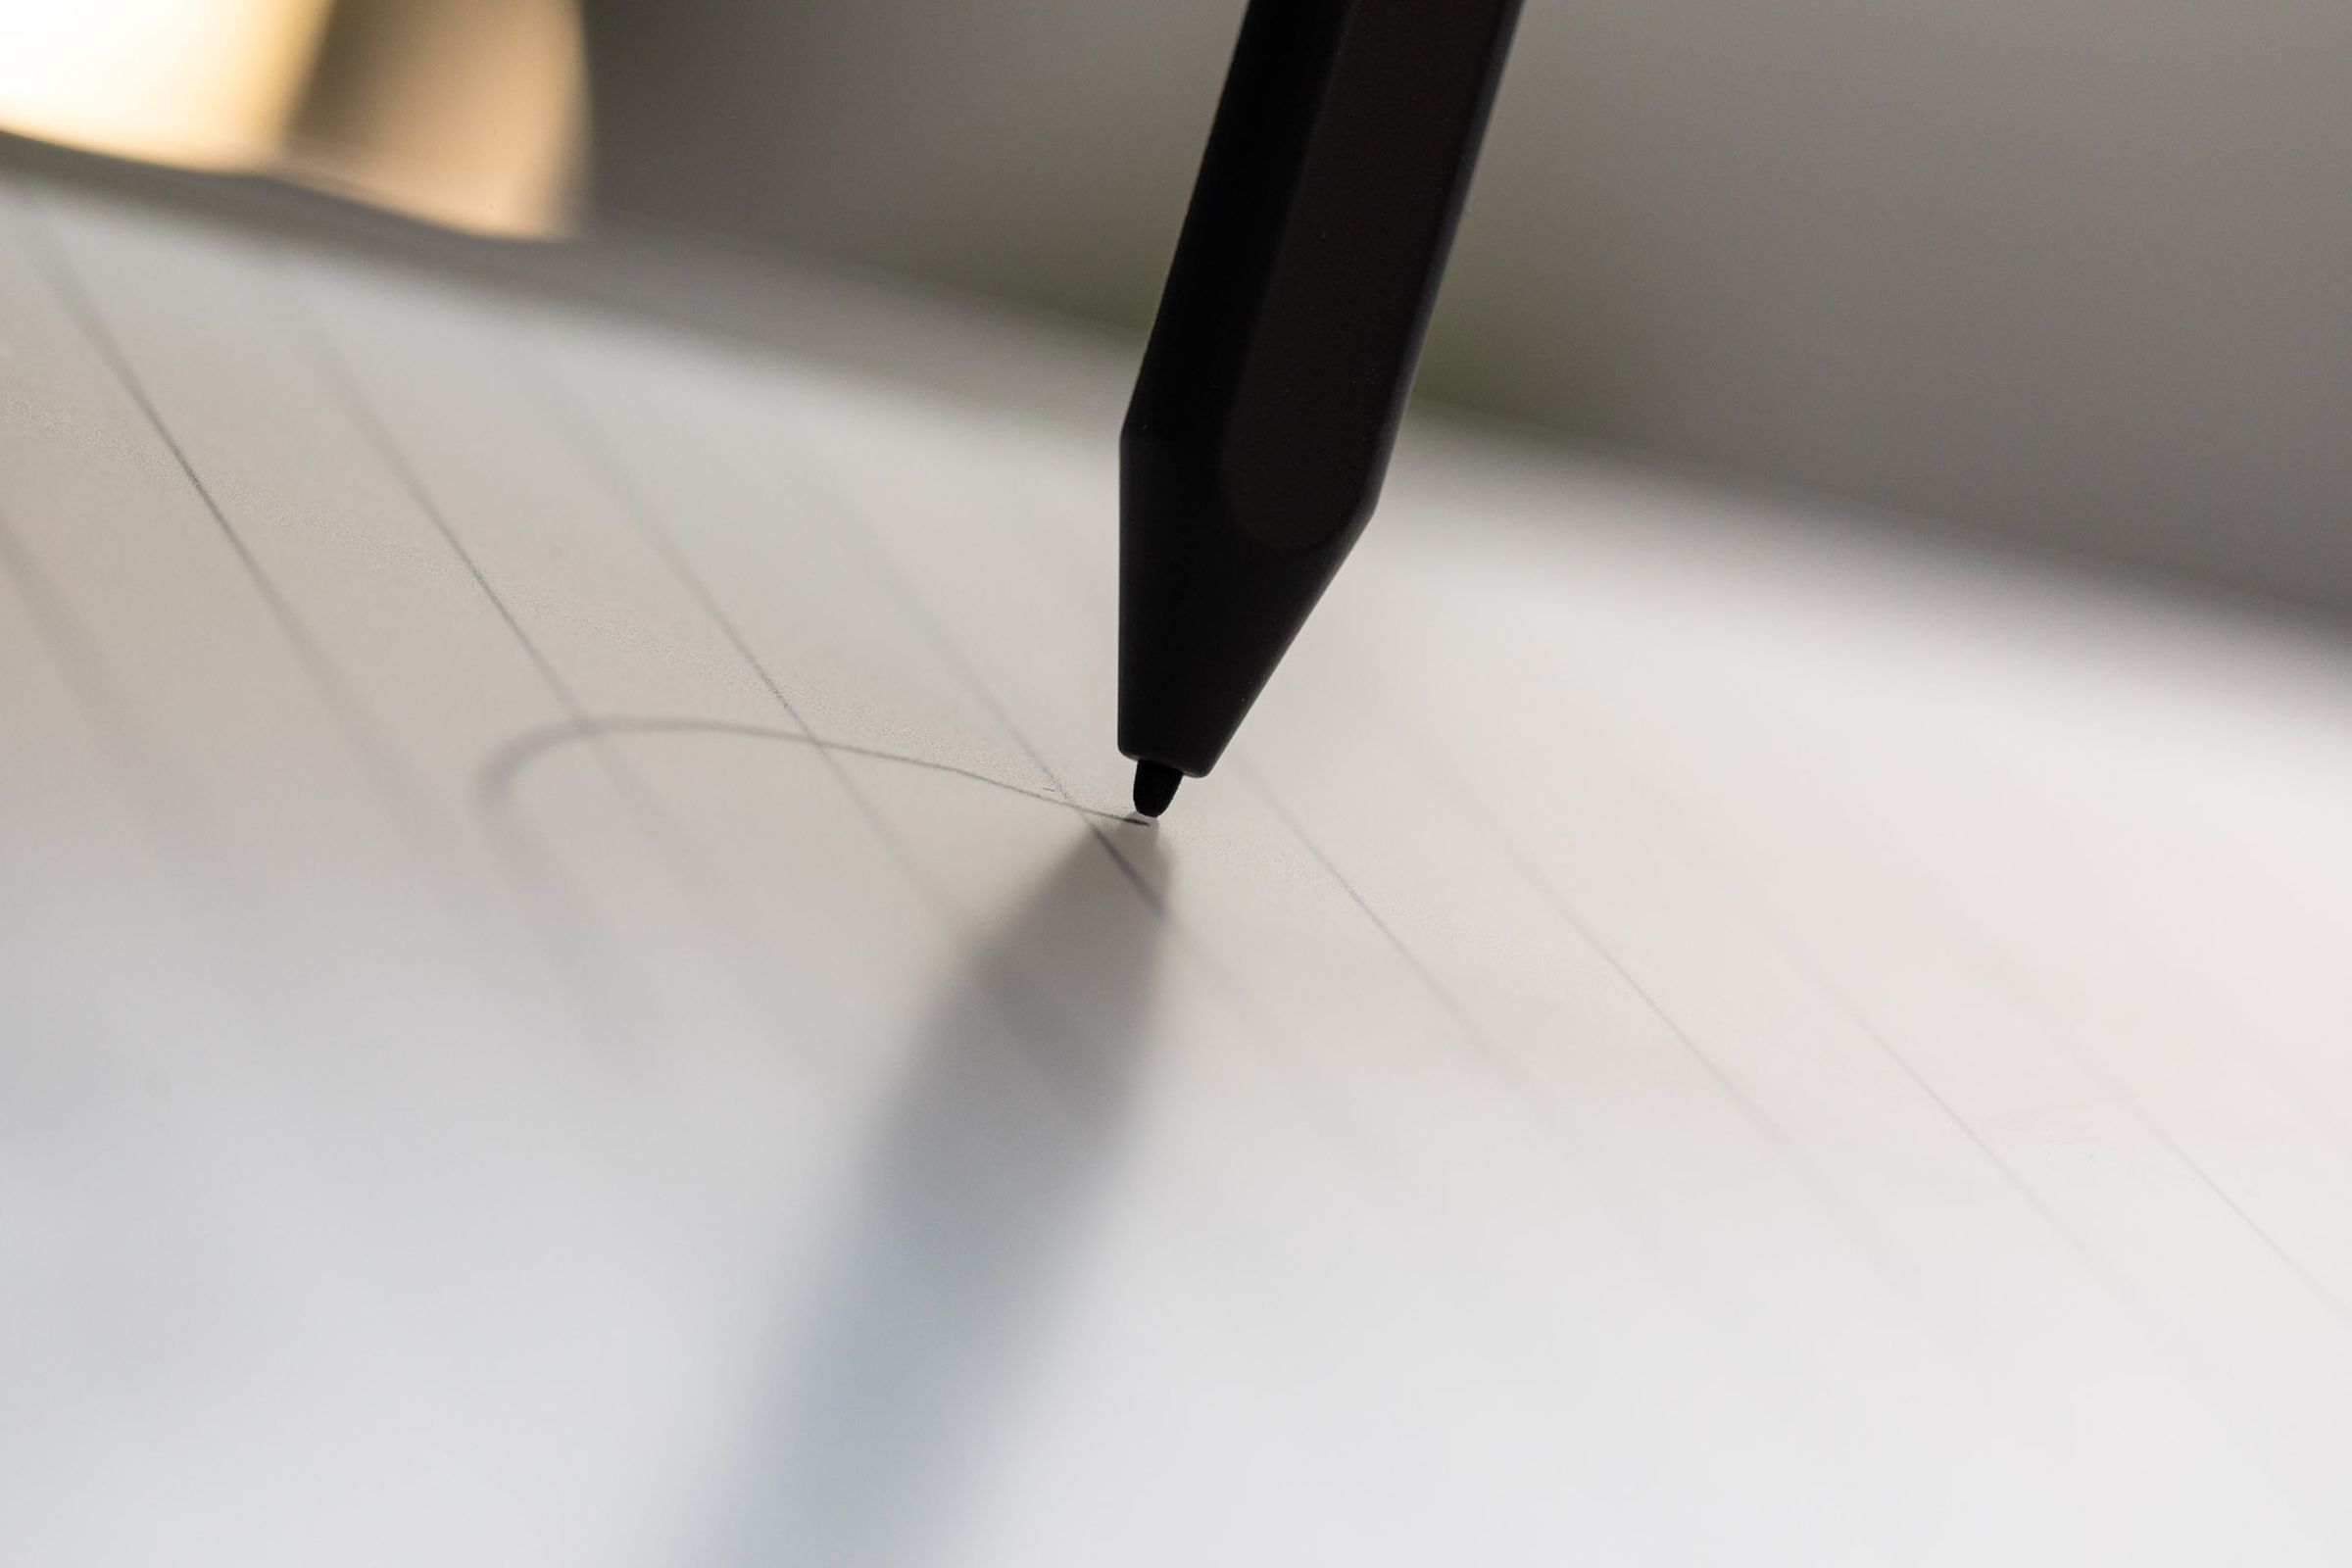 Um close-up da caneta tocando o vidro.